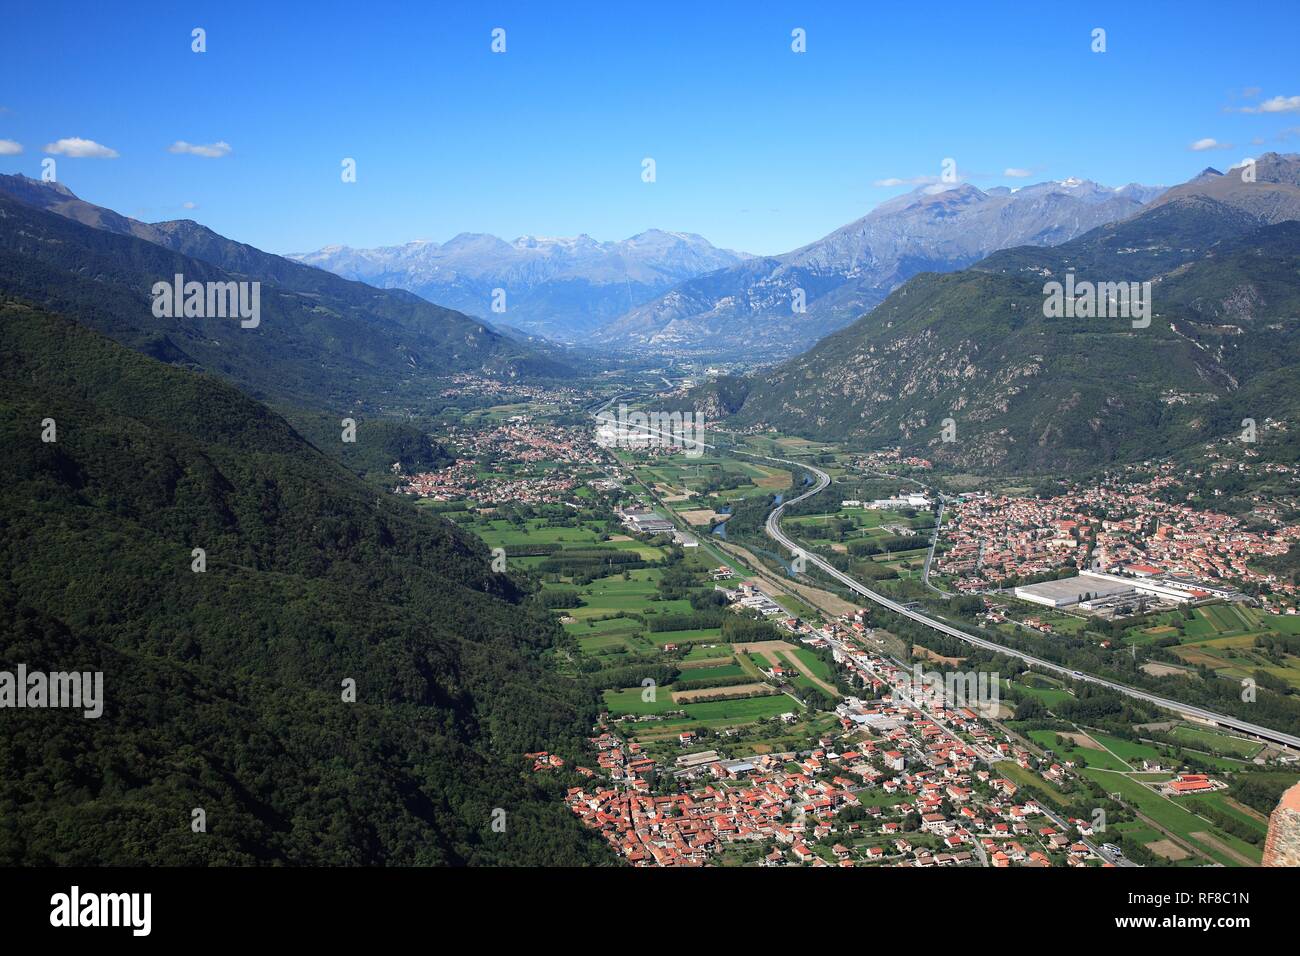 Sant Ambrogio, Condove and Sant Antonio in the Valle di Susa, Piedmont, Italy Stock Photo